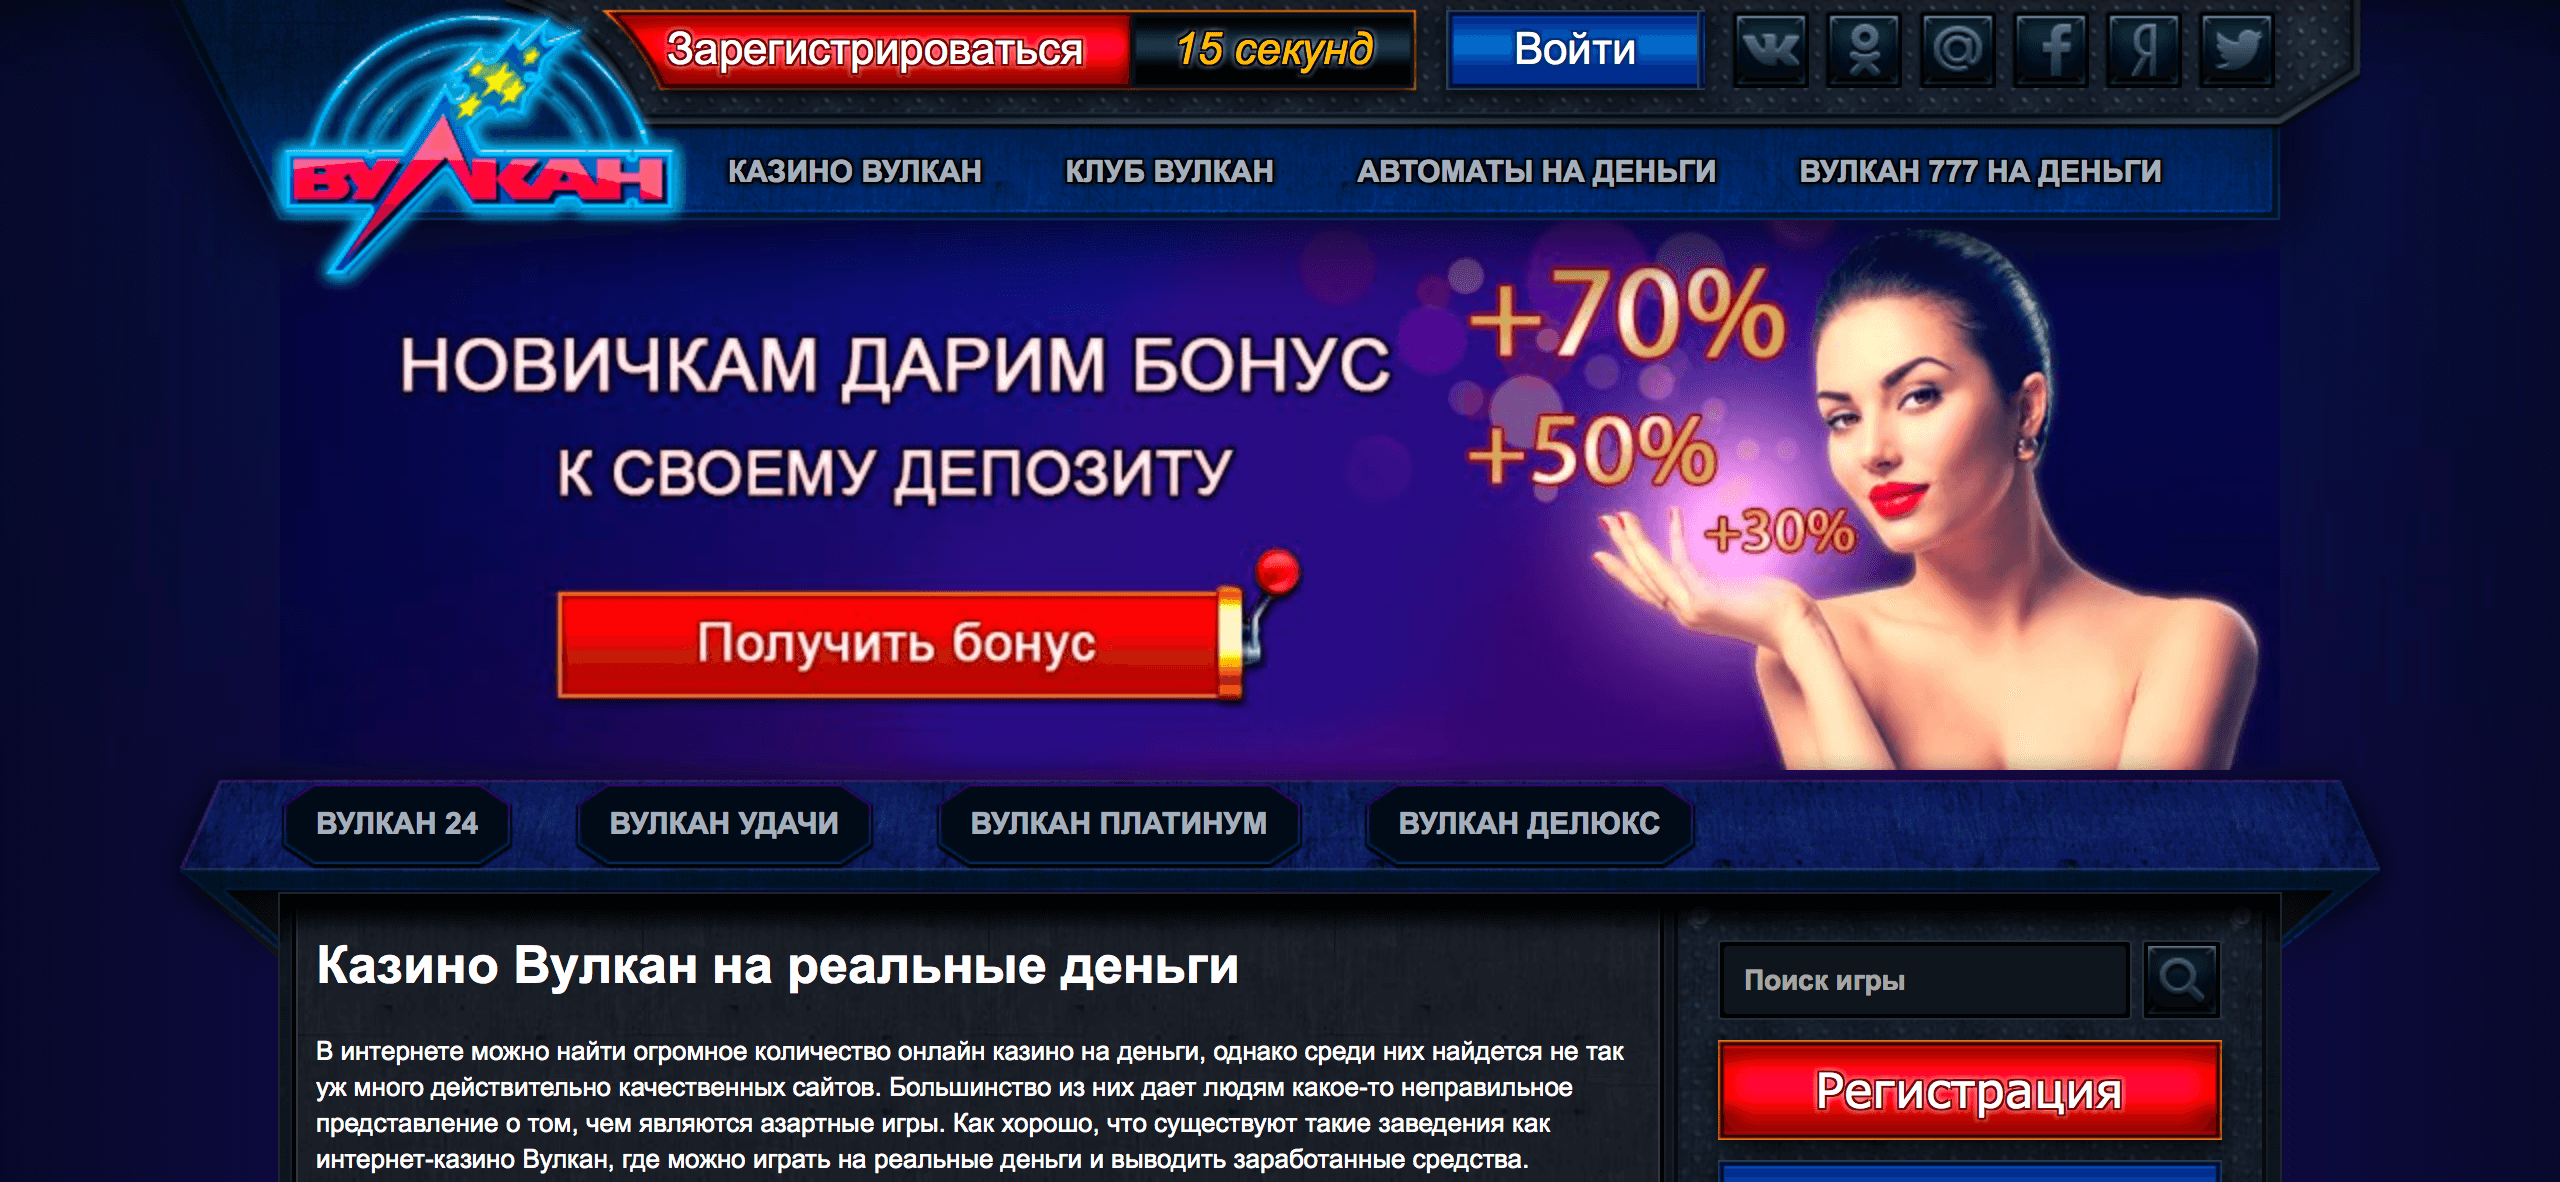 Регистрация в онлайн казино вулкан онлайн рулетка играть на реальные деньги